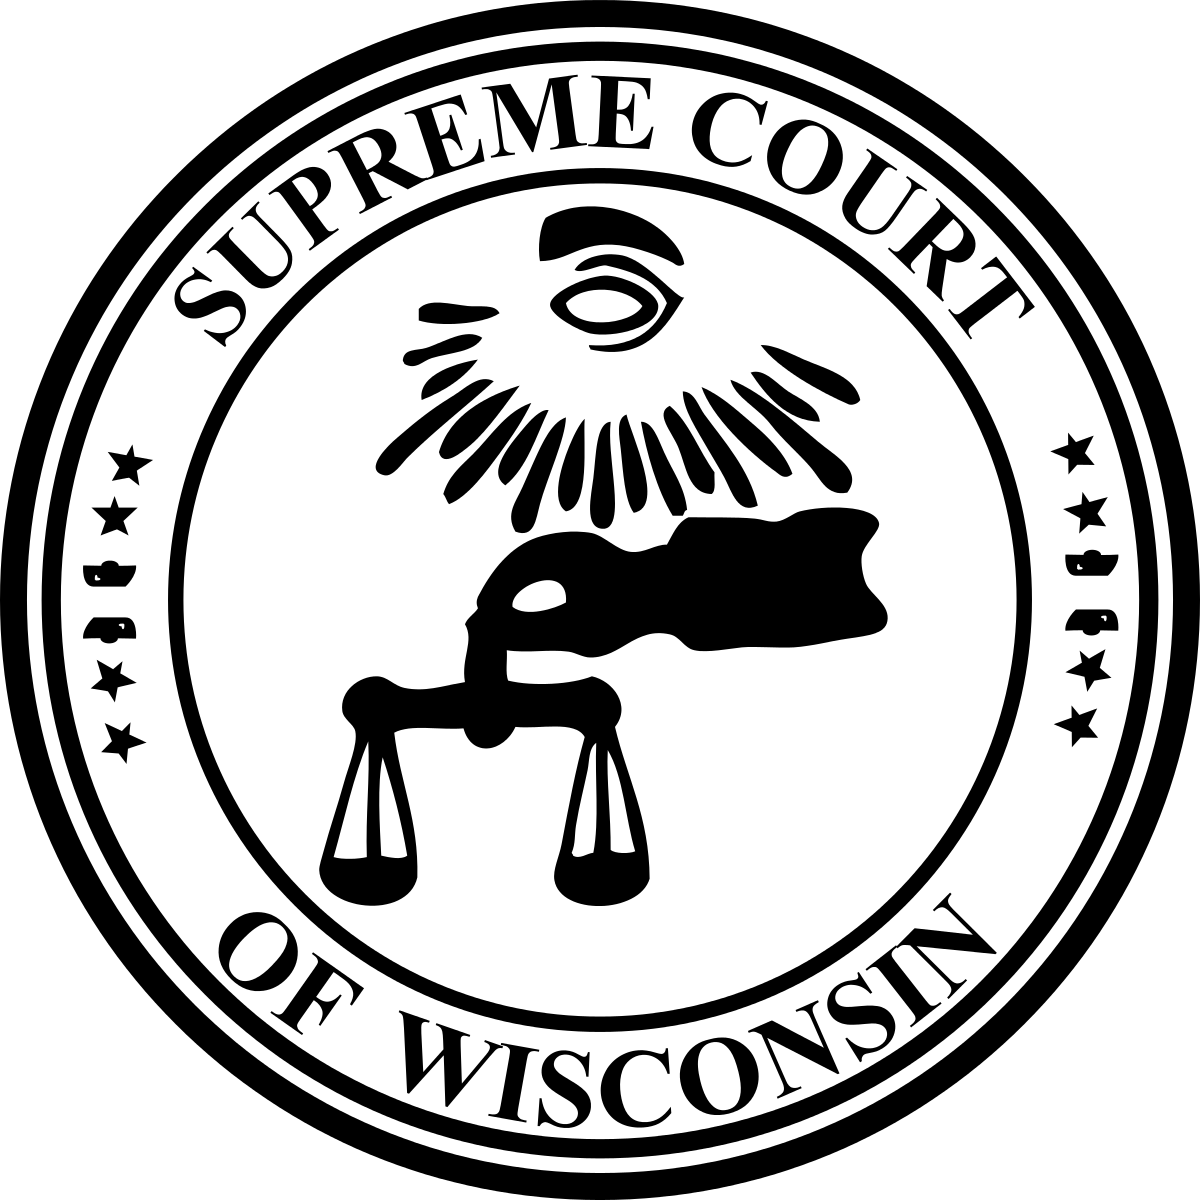 Wisconsin Supreme Court Logo